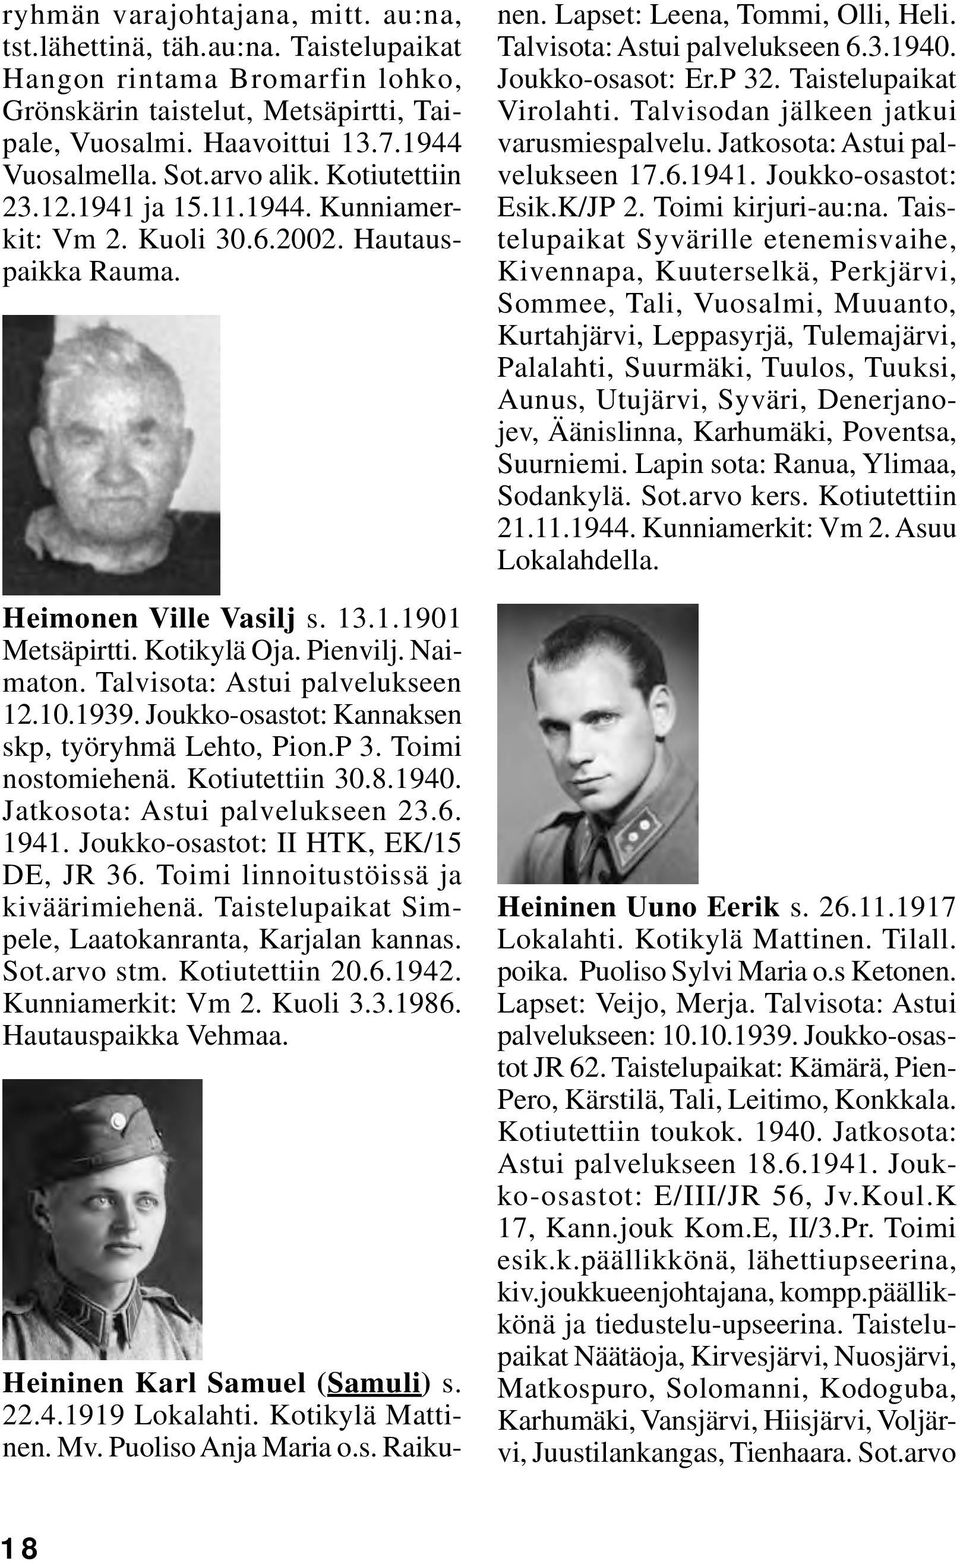 Talvisota: Astui palvelukseen 12.10.1939. Joukko-osastot: Kannaksen skp, työryhmä Lehto, Pion.P 3. Toimi nostomiehenä. Kotiutettiin 30.8.1940. Jatkosota: Astui palvelukseen 23.6. 1941.